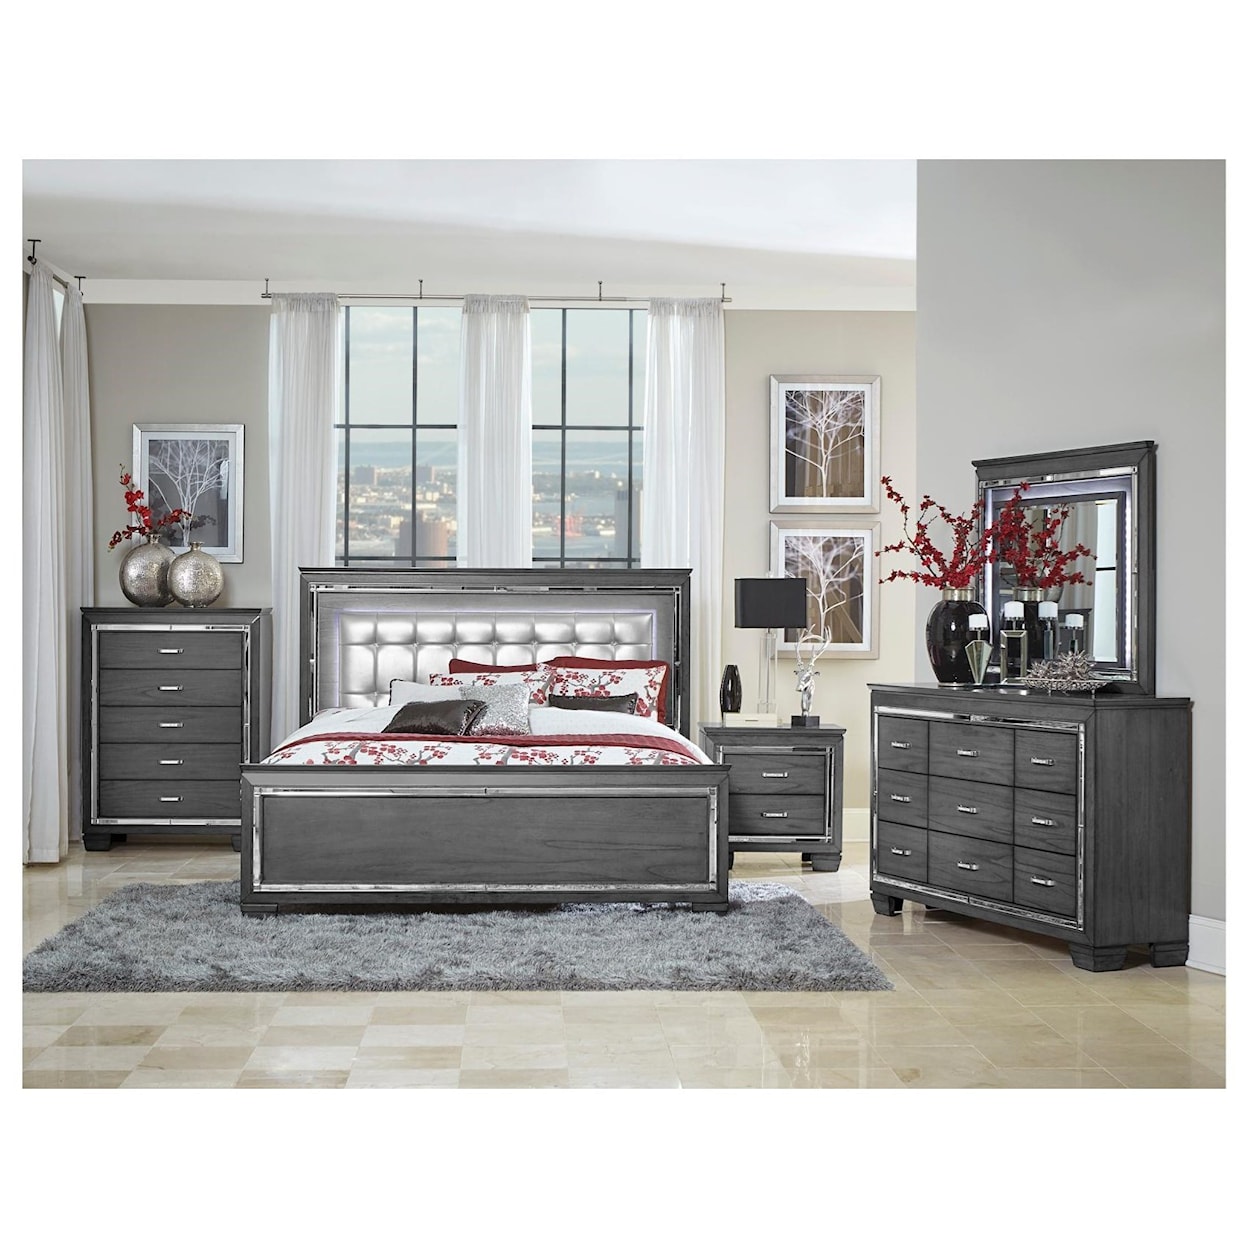 Homelegance Furniture Allura King Panel Bed